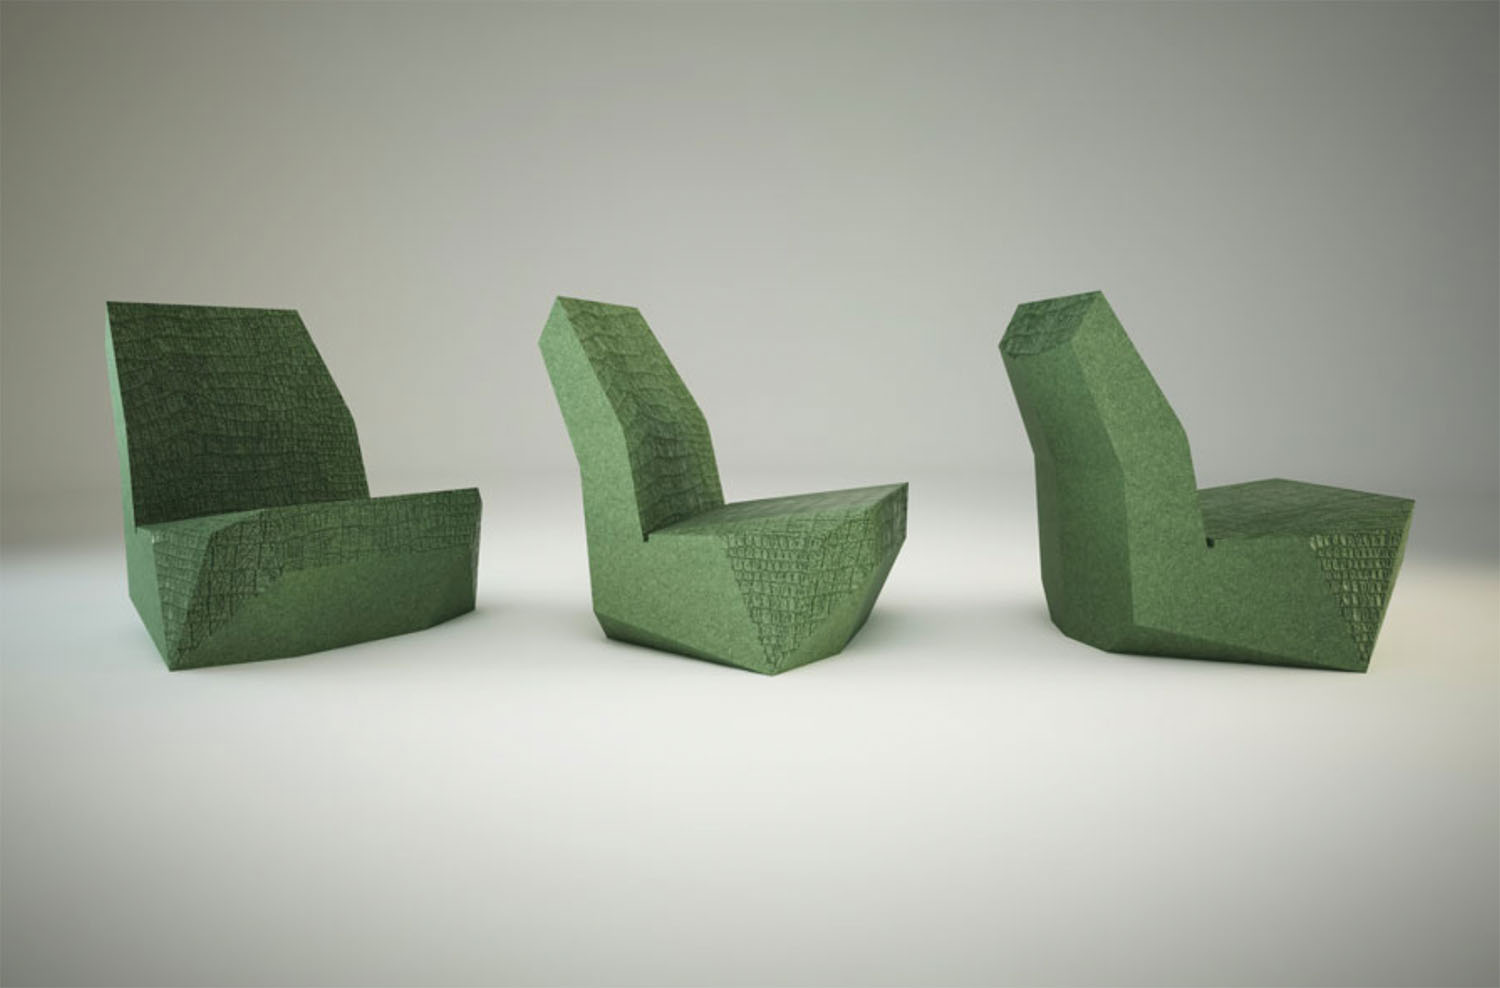 fabrication d'assises en béton Ductal imitation croco du designer Pablo Reinoso